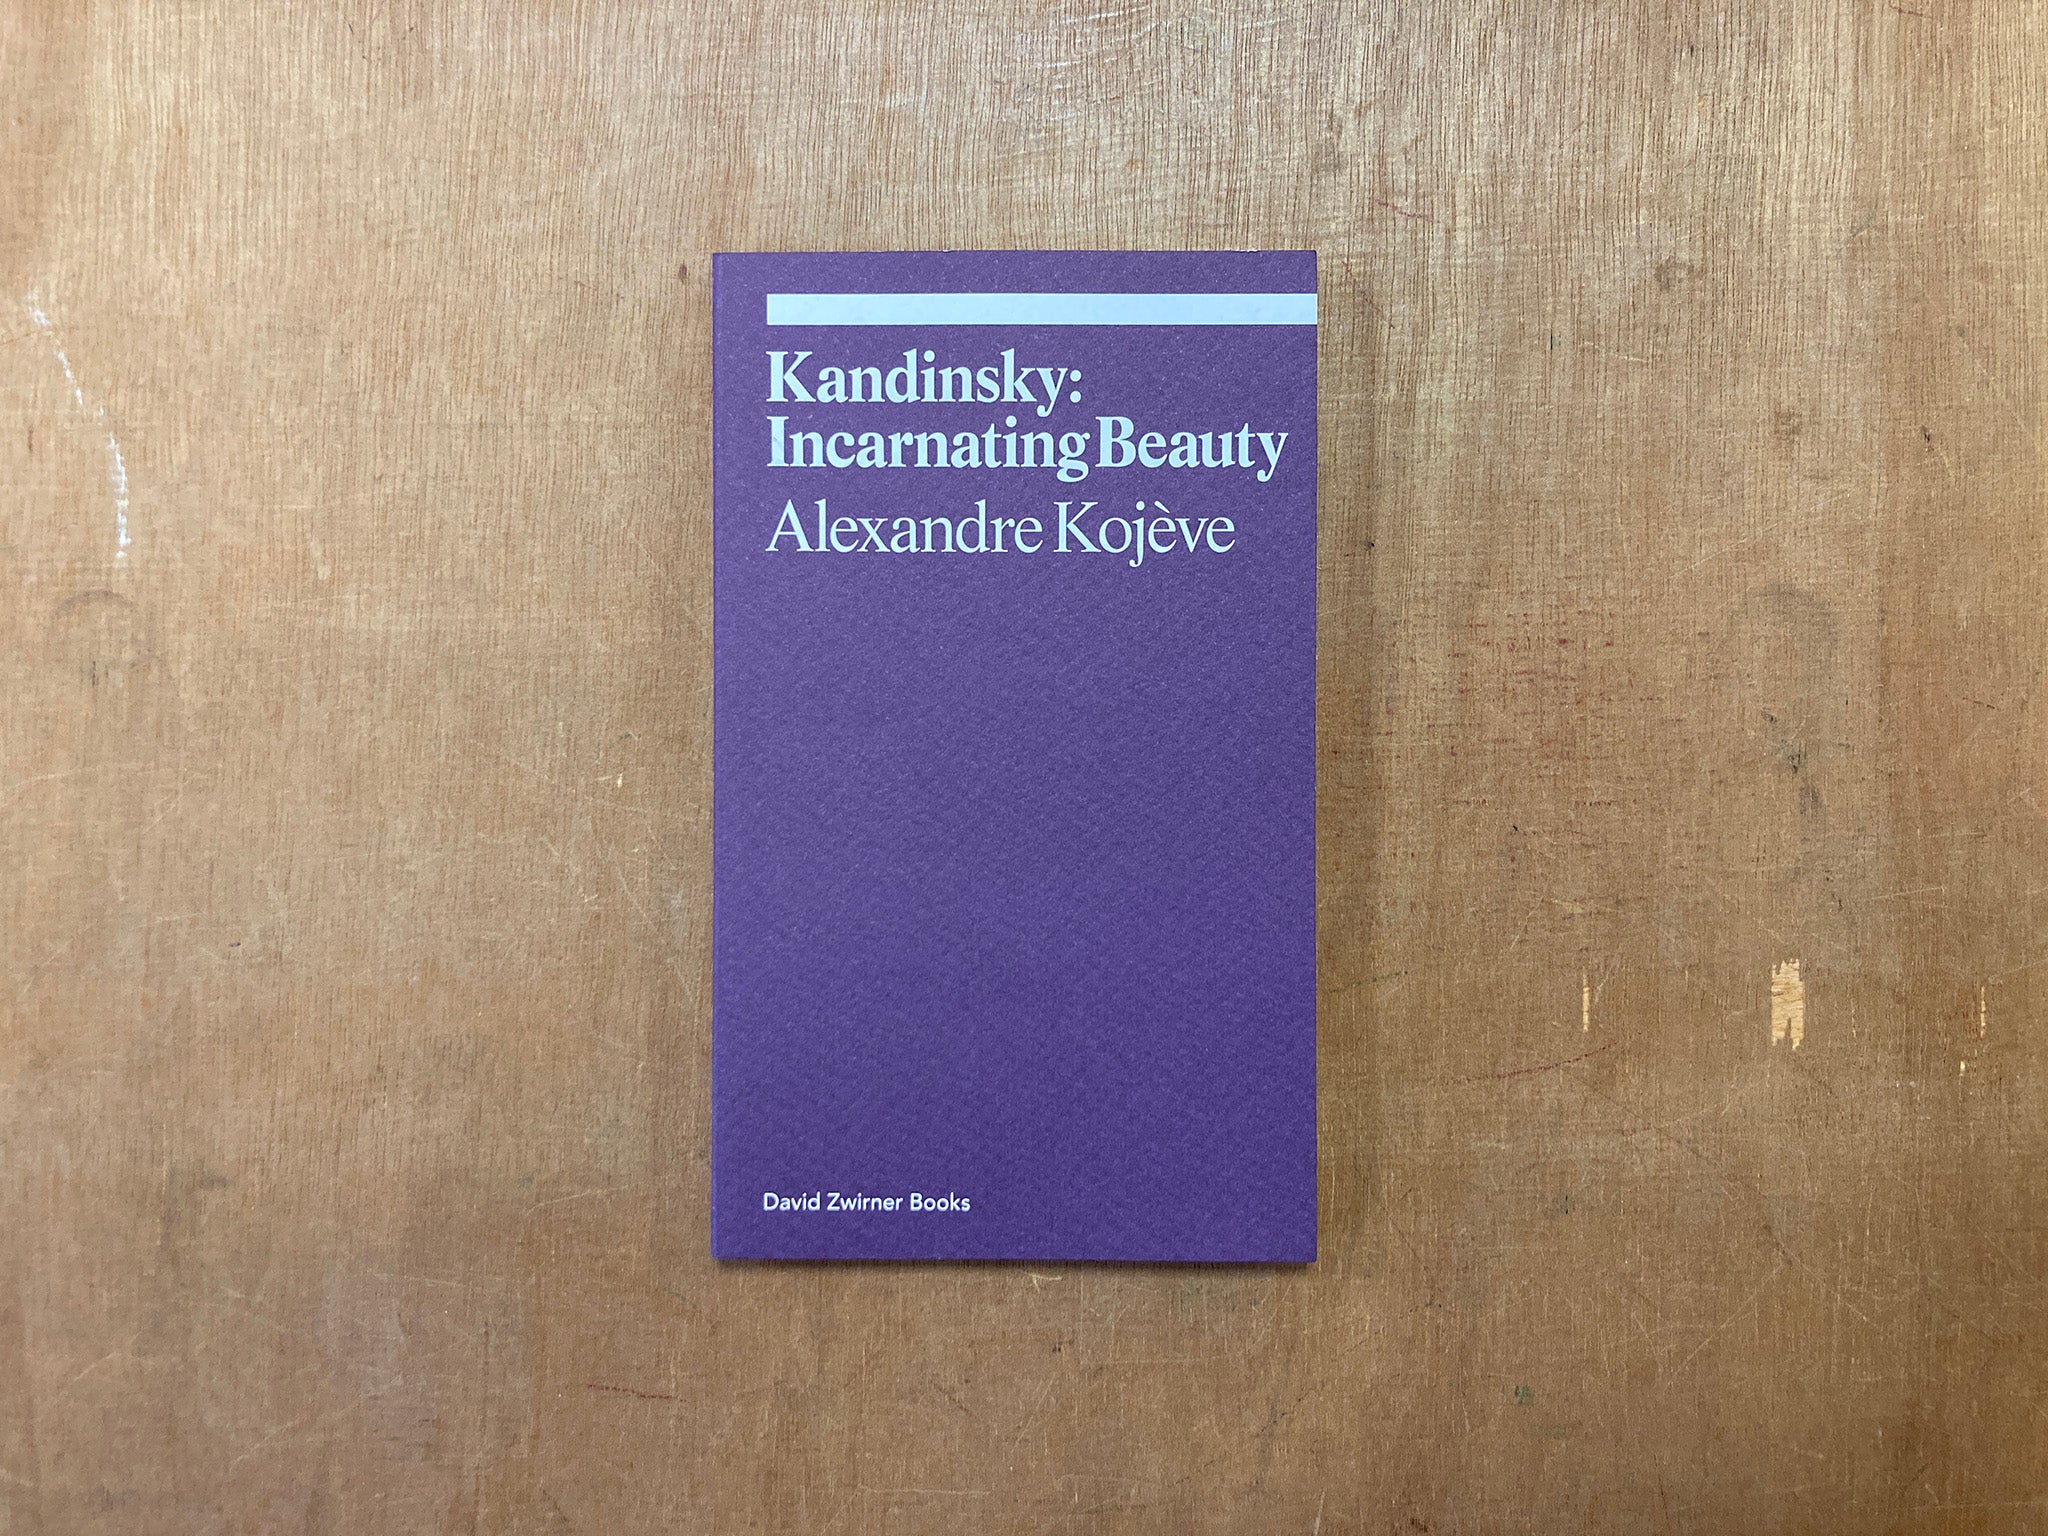 KANDINSKY: INCARNATING BEAUTY by Alexandre Kojève